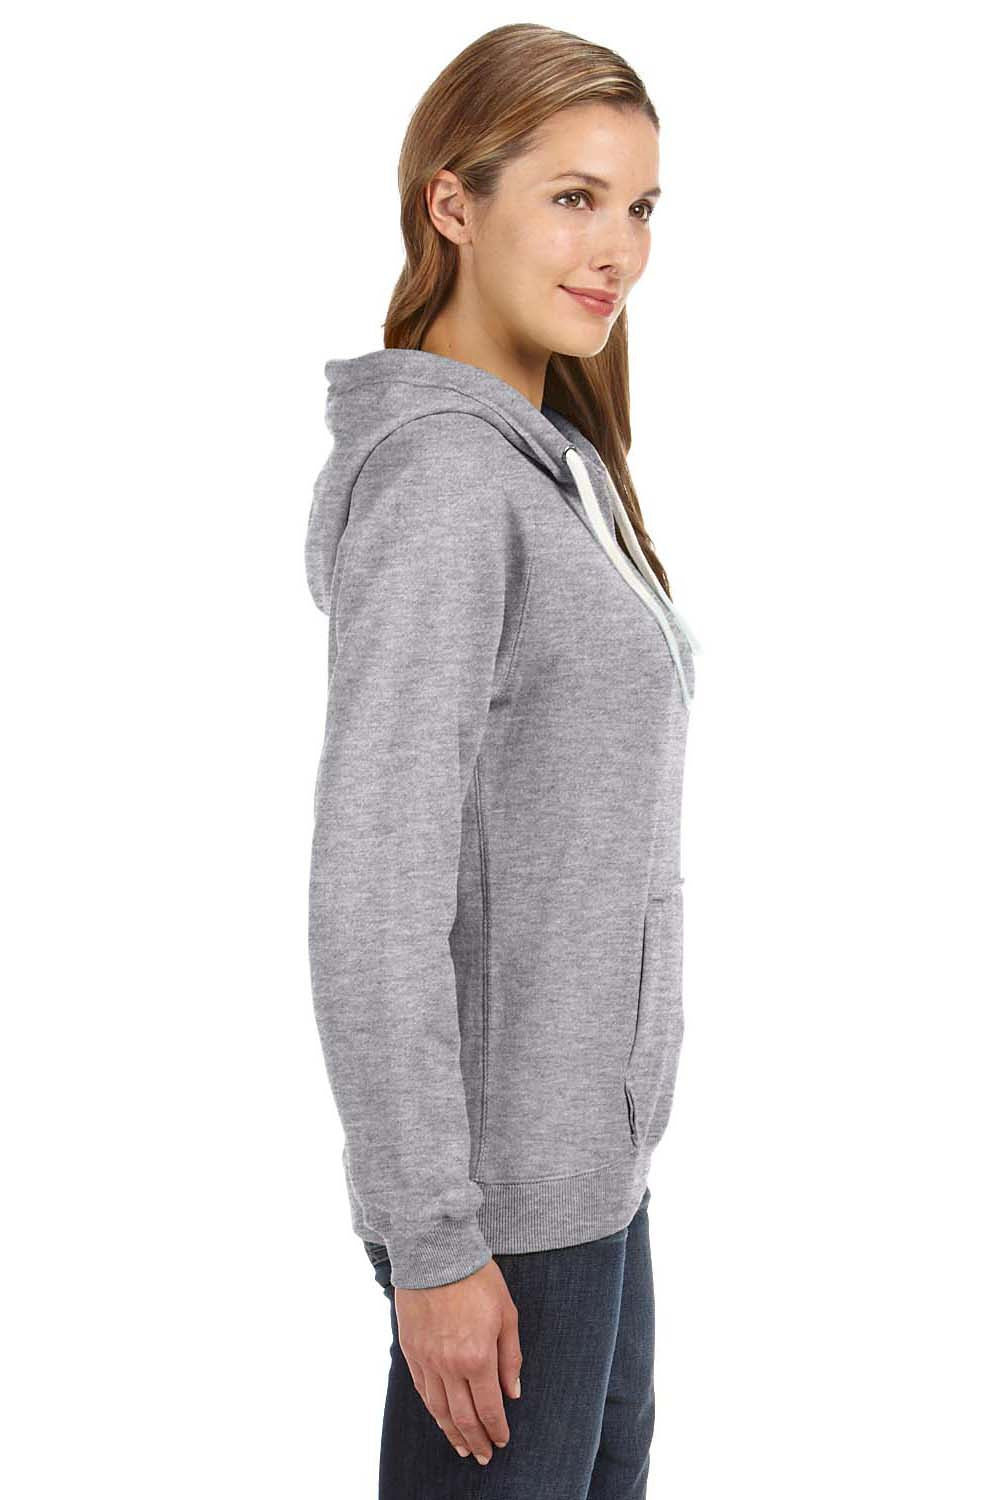 J America JA8836 Womens Sydney Sueded Fleece Hooded Sweatshirt Hoodie Oxford Grey Side